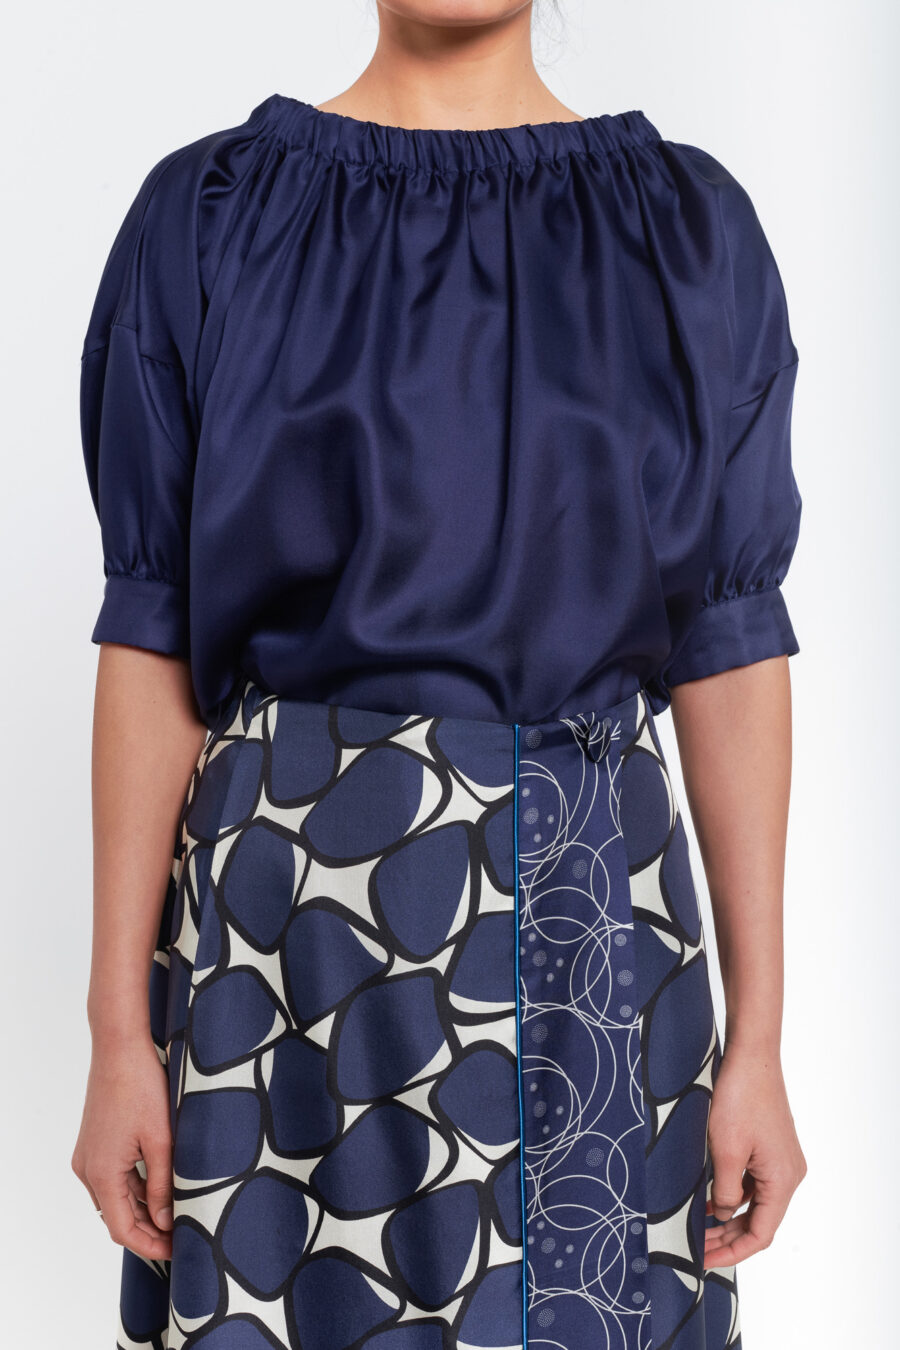 Skirt Joan Ref 14.50.17 D 900x1350 - Skirt JOAN